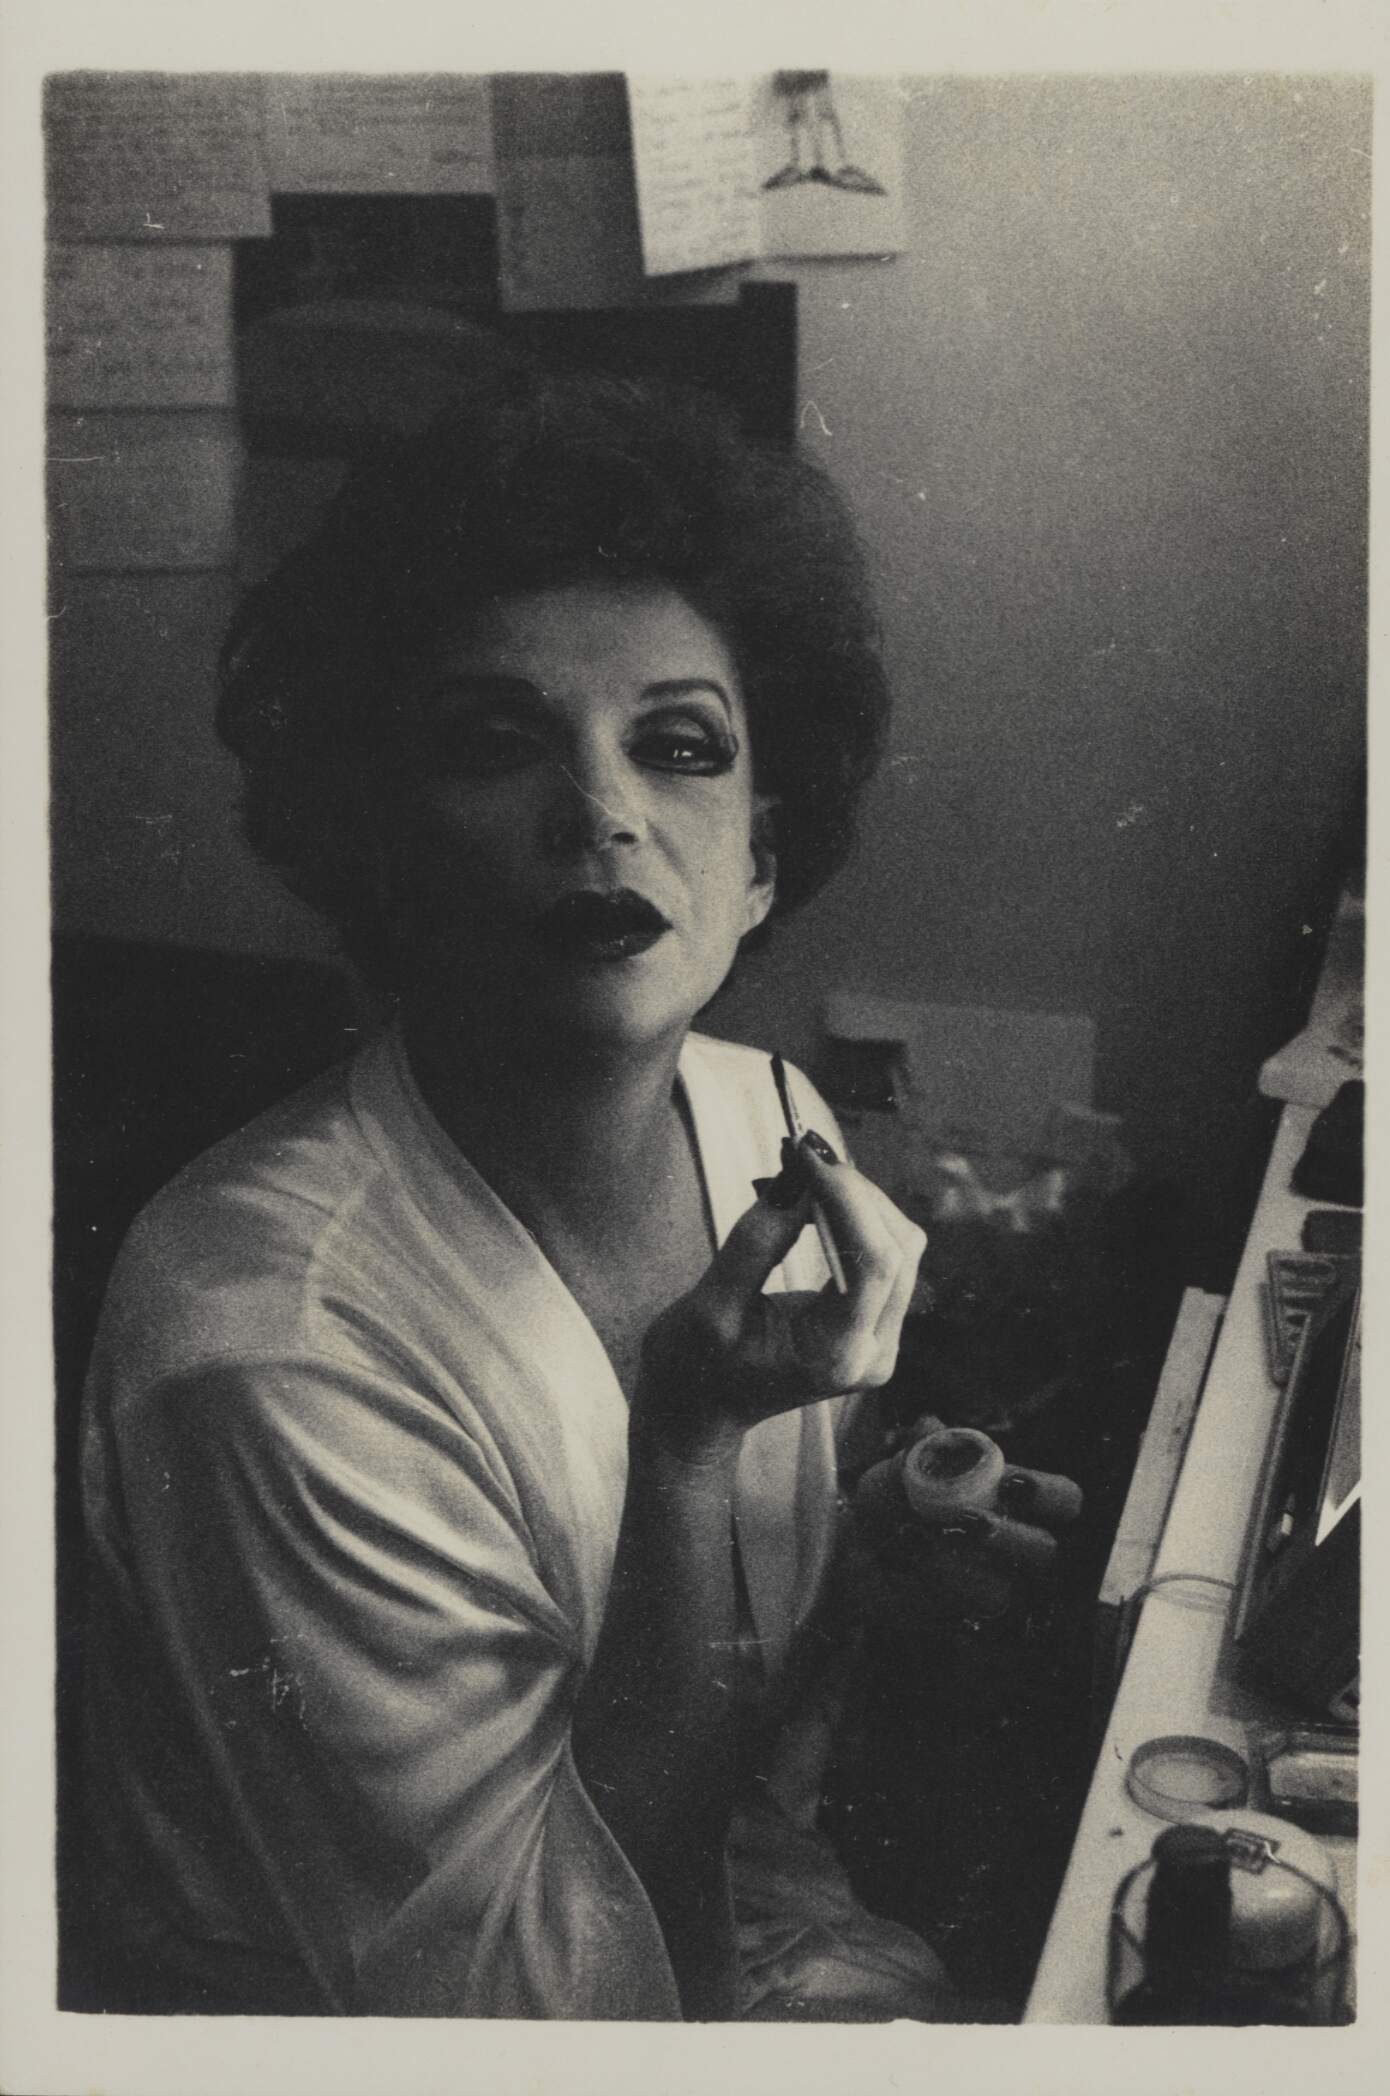 A atriz posa em um camarim em 1976, aos 54 anos (Foto: Milton Guran)